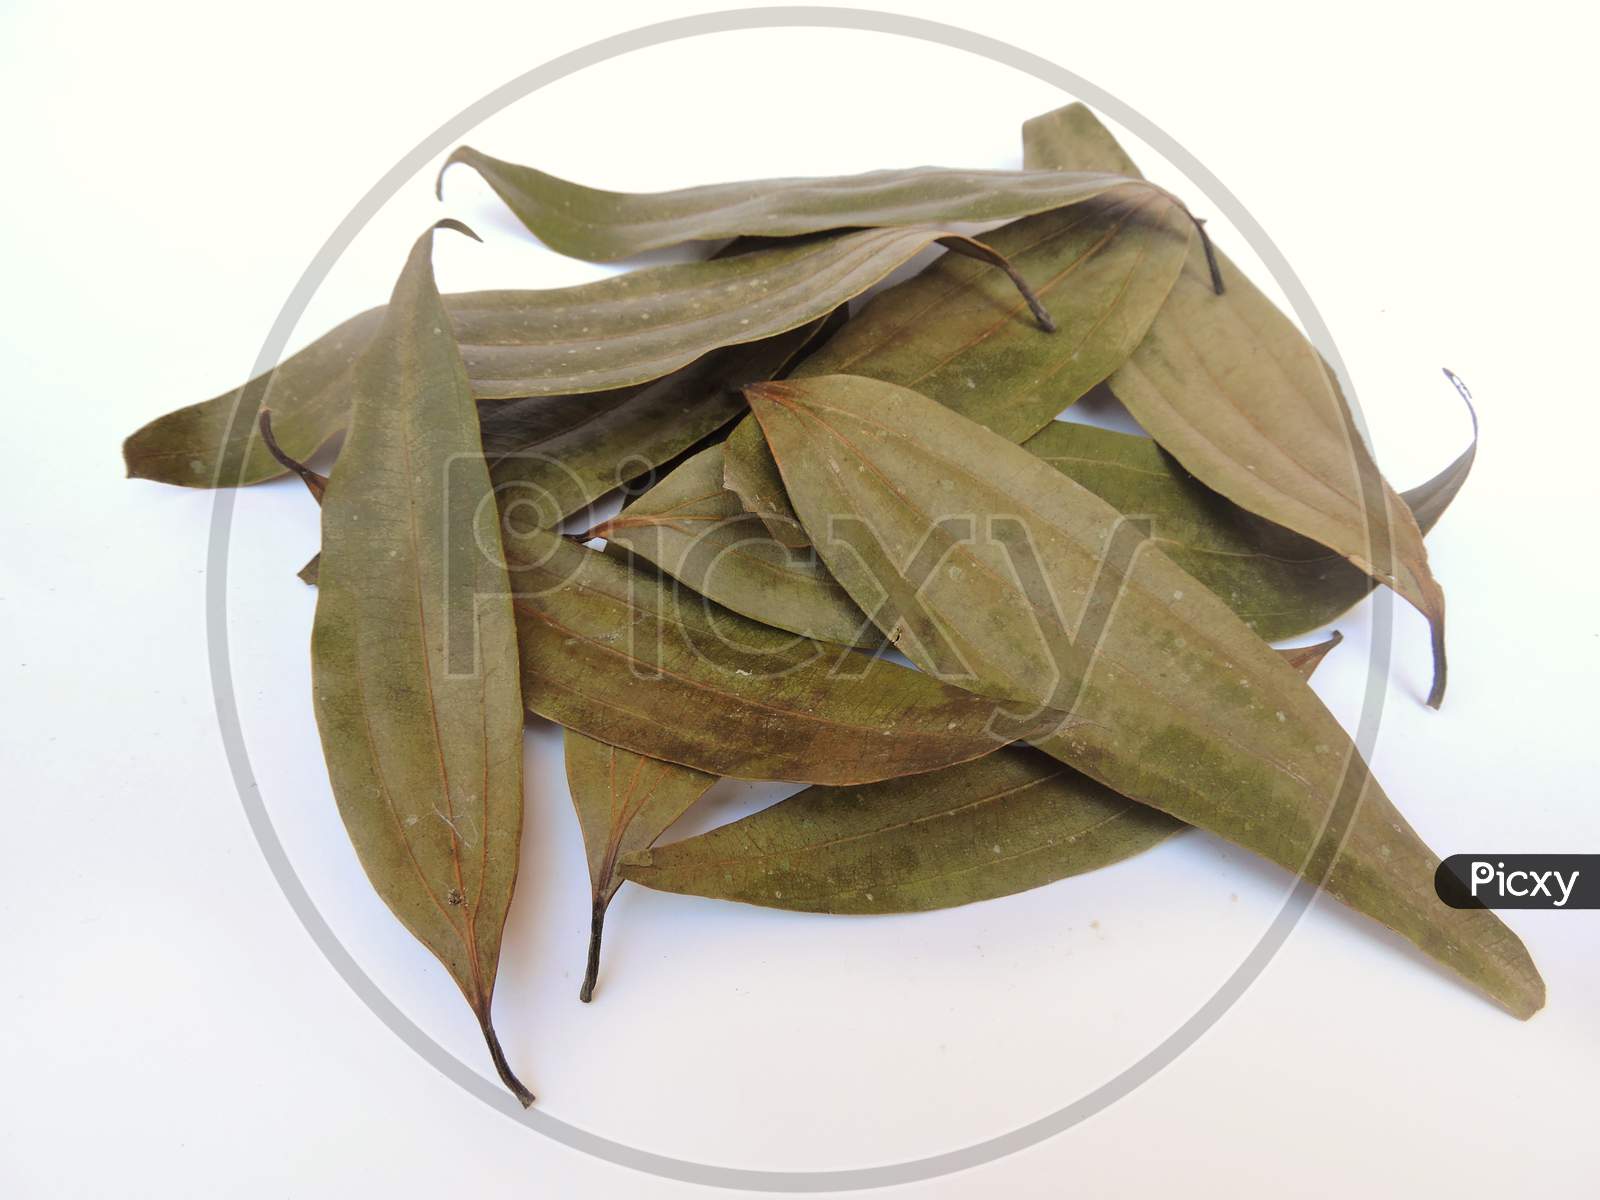 Spice - Bay leaf